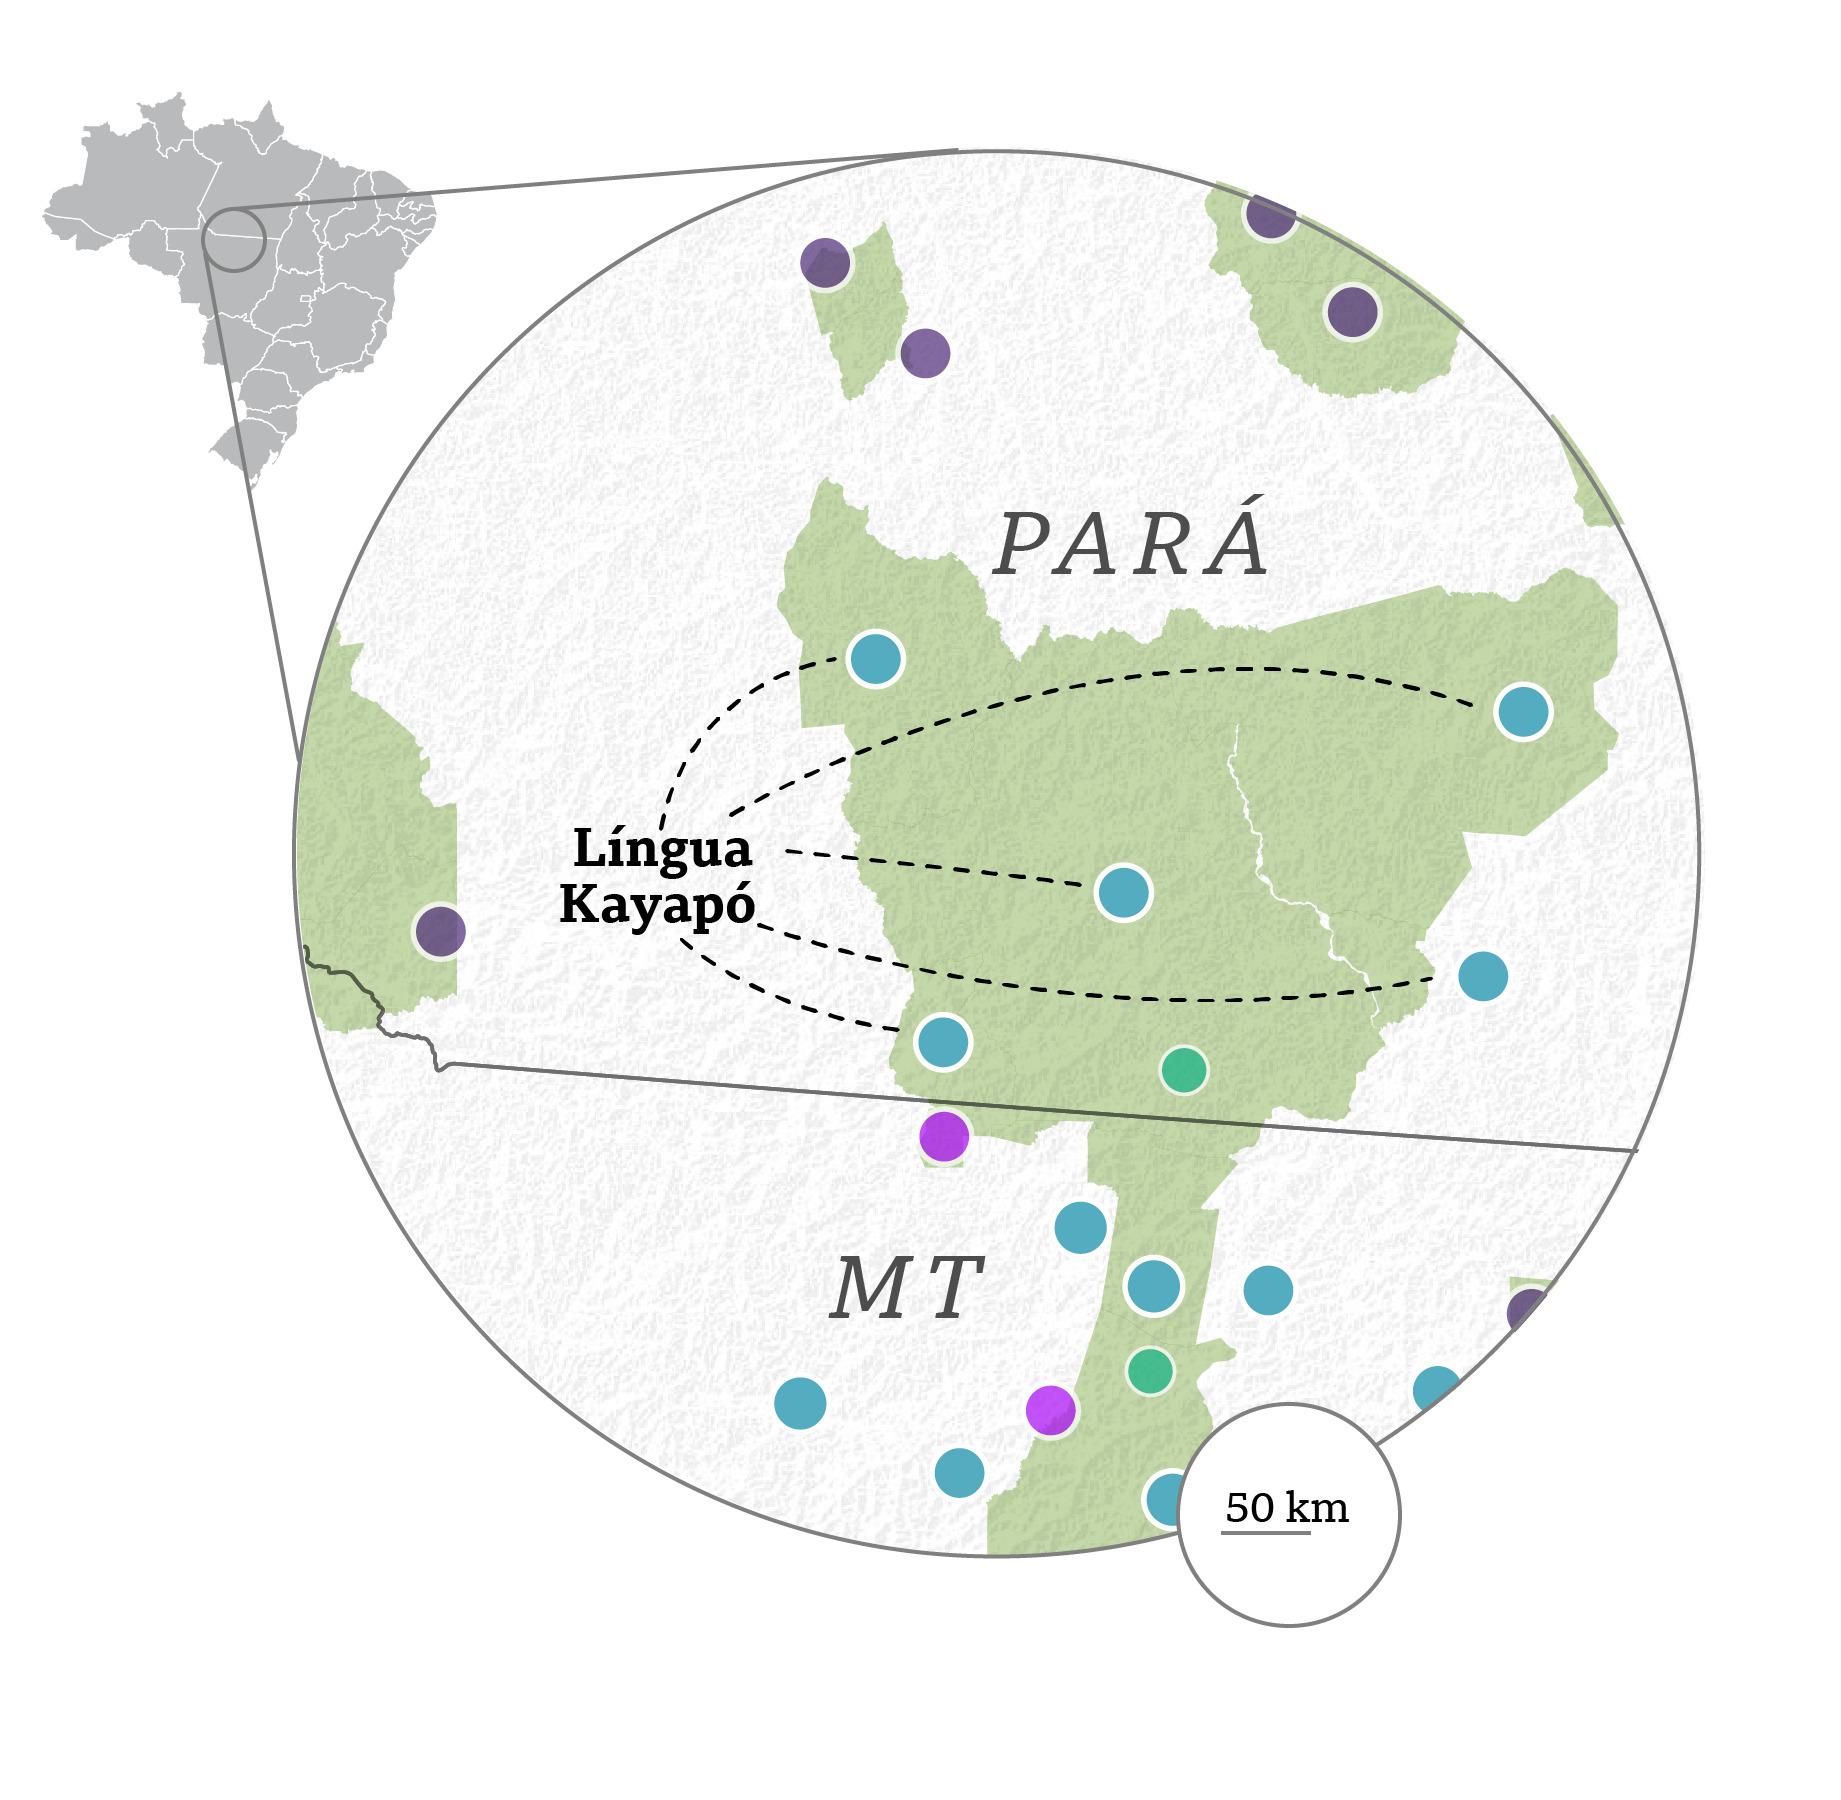 Mapa das áreas onde o kayapó é falado